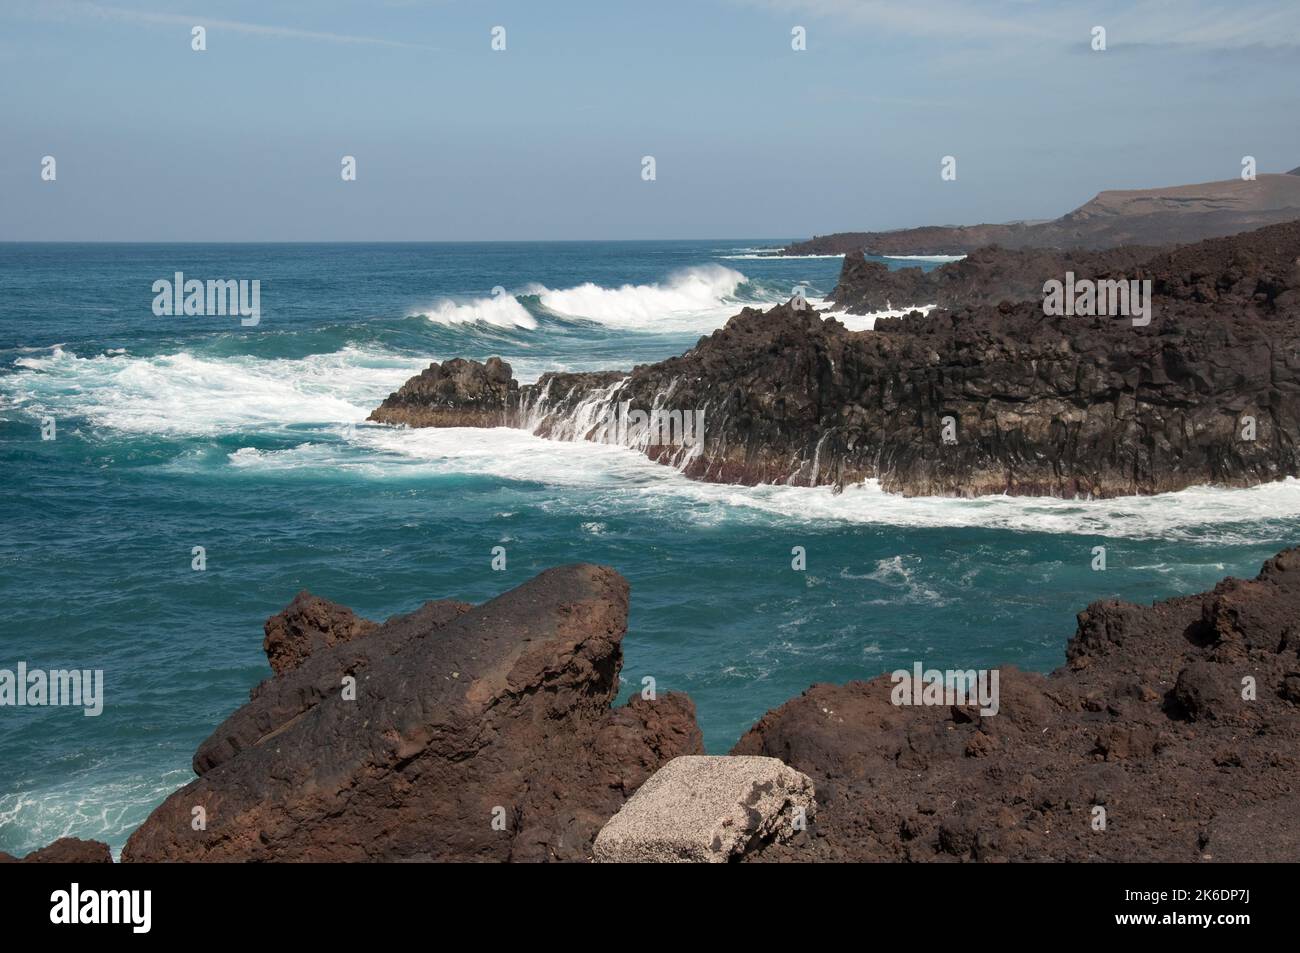 Los Hervideros, Lanzarote, îles Canaries - une zone de grande turbulence de l'océan Atlantc Banque D'Images